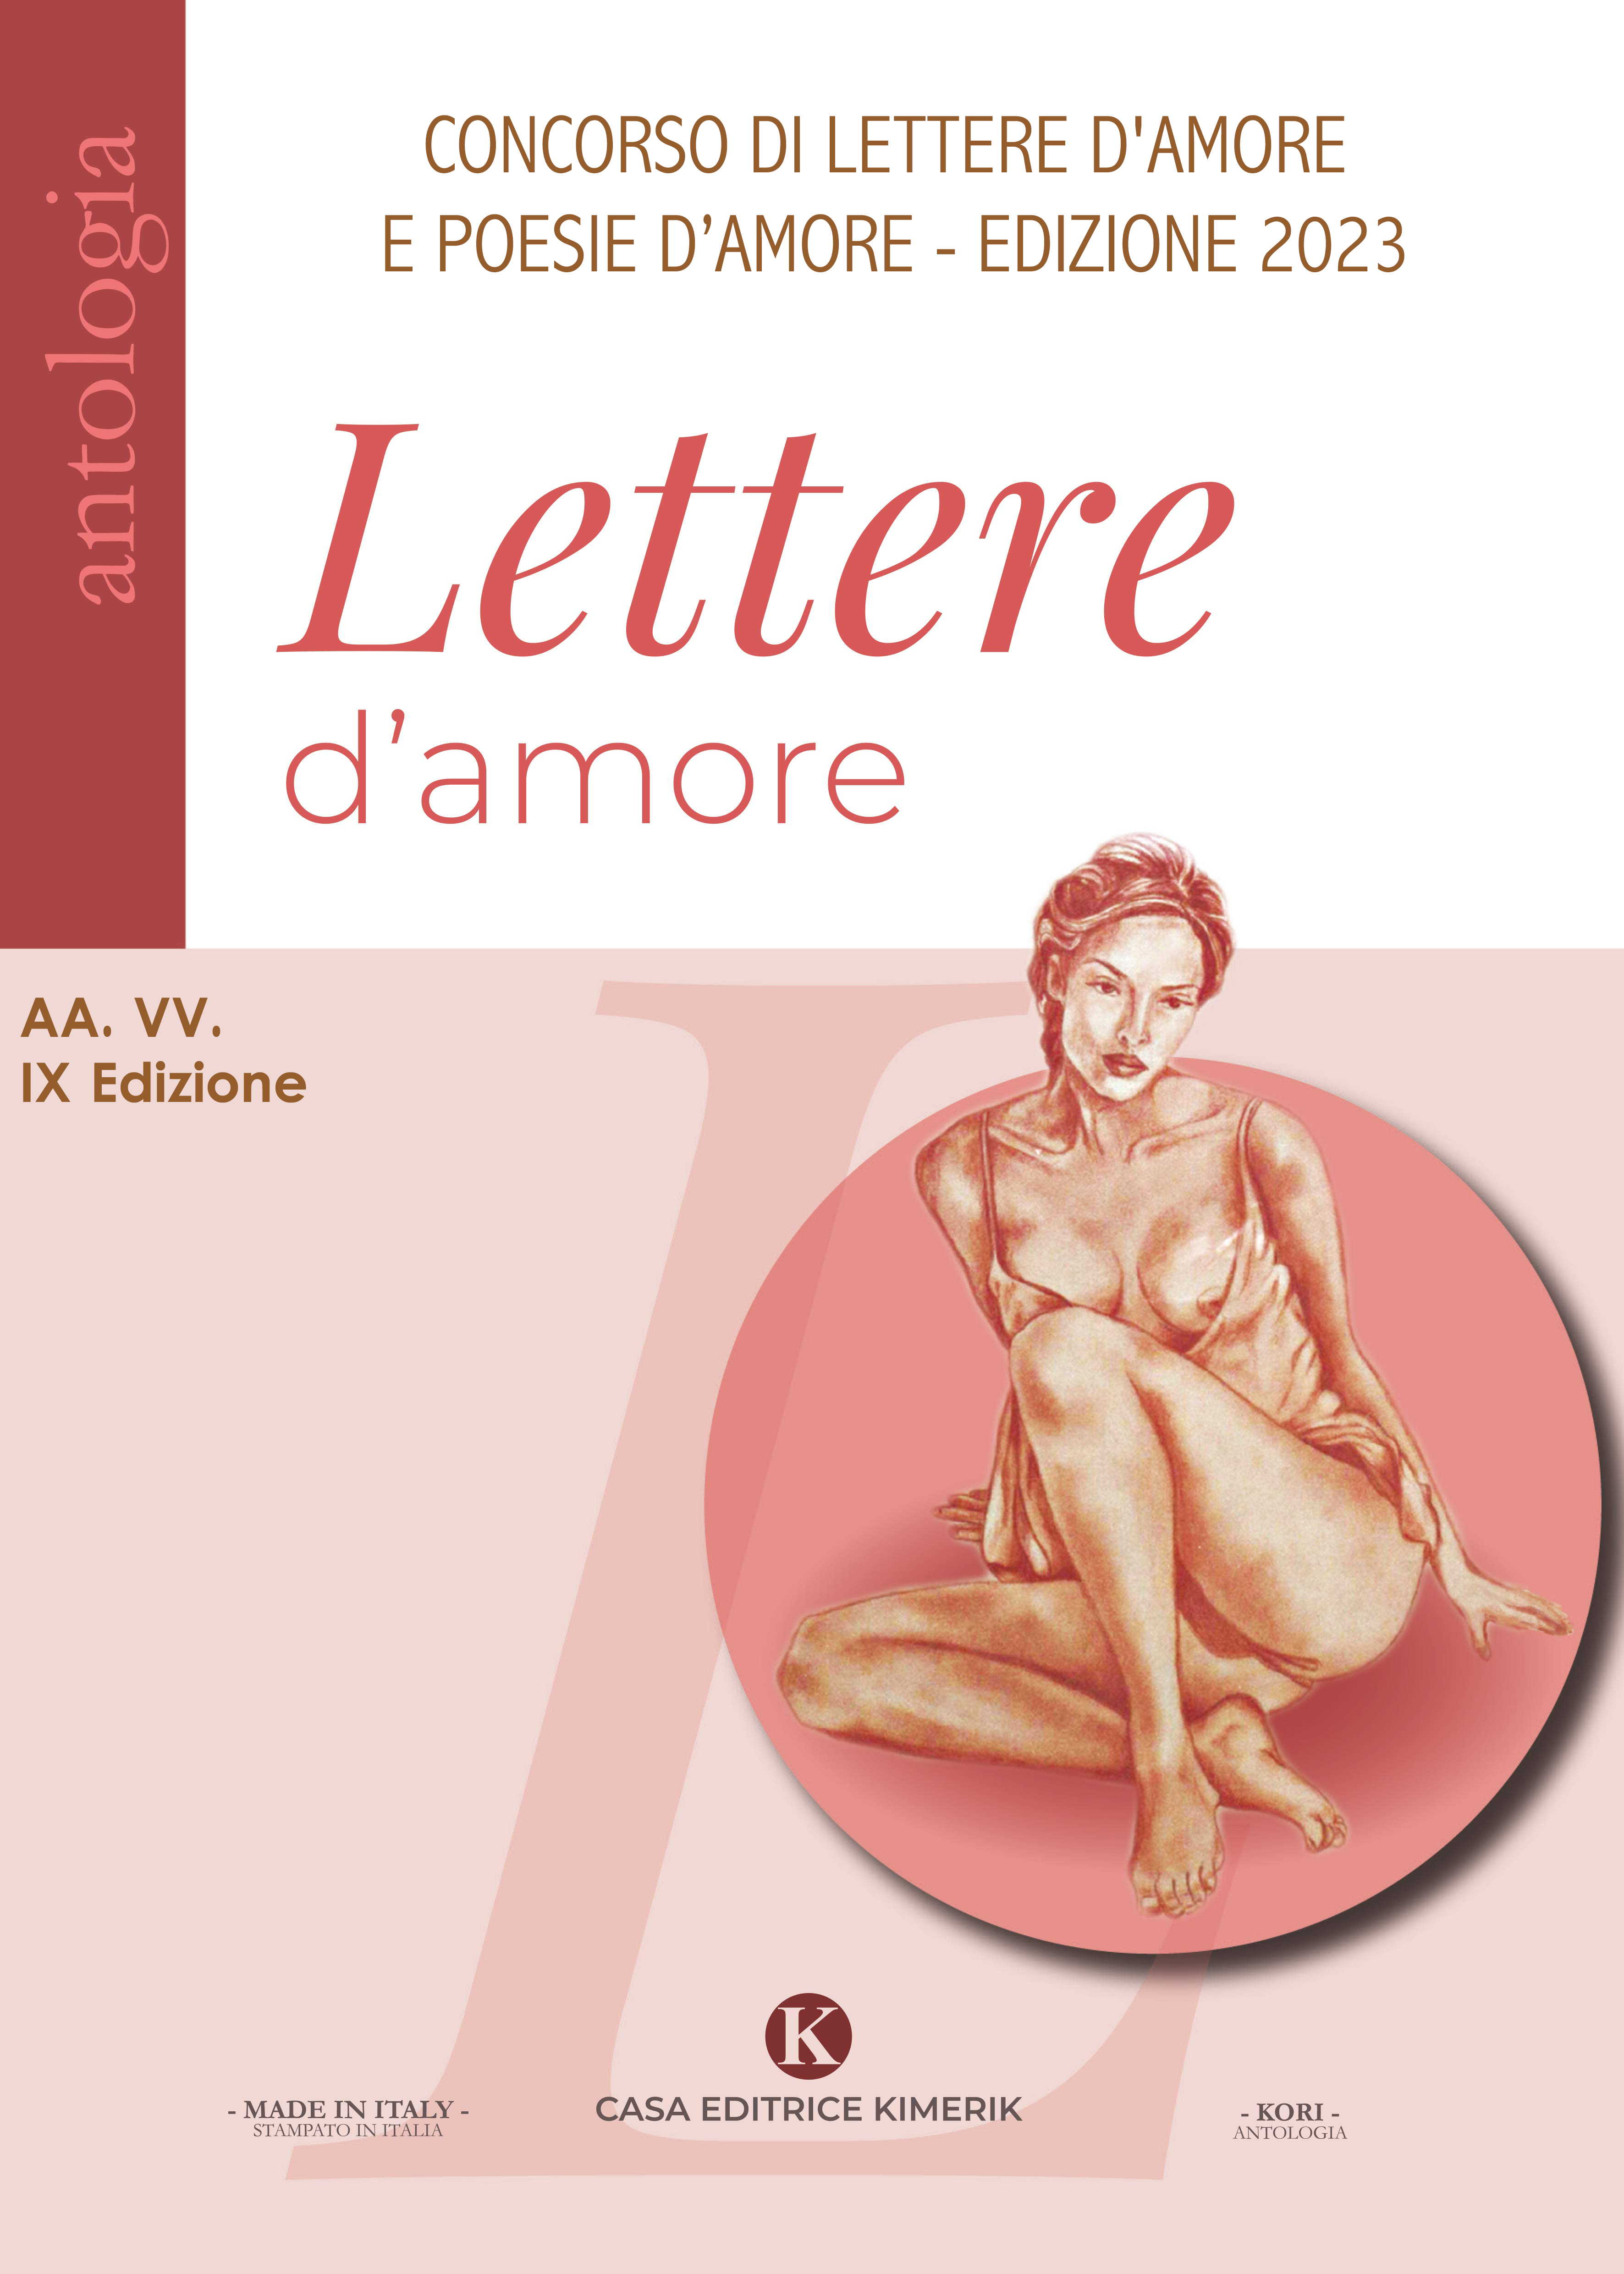 Lettere d'amore - IX Edizione